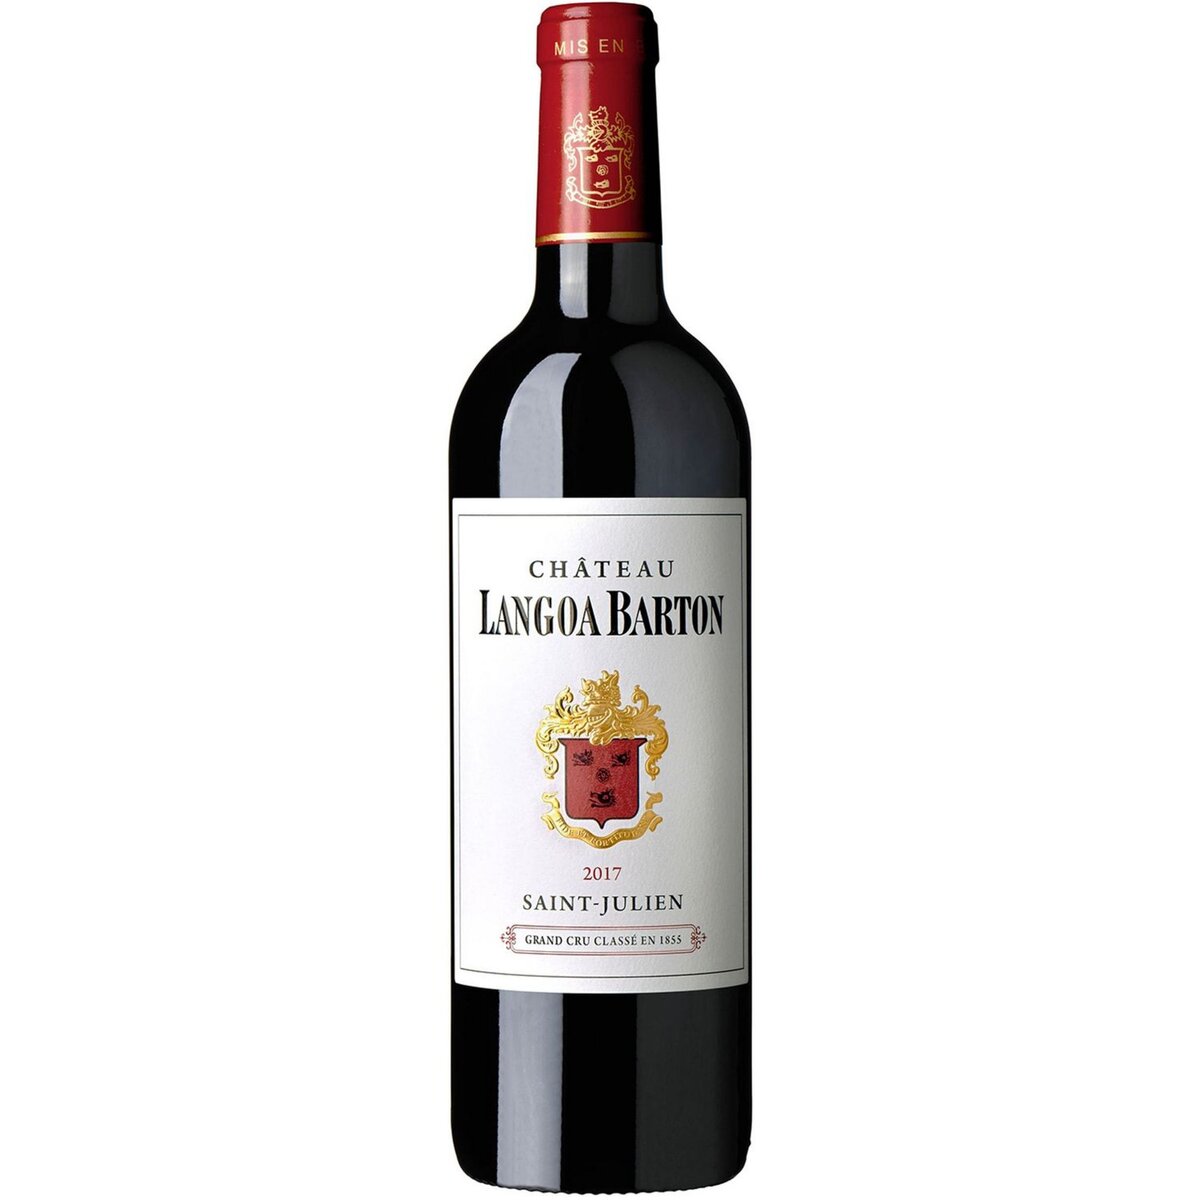 Vin rouge AOP Saint Julien Château Langoa Barton Grand Cru Classé 2017 75cl